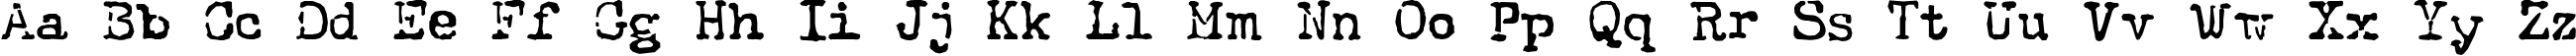 Пример написания английского алфавита шрифтом Intersidereal Quest